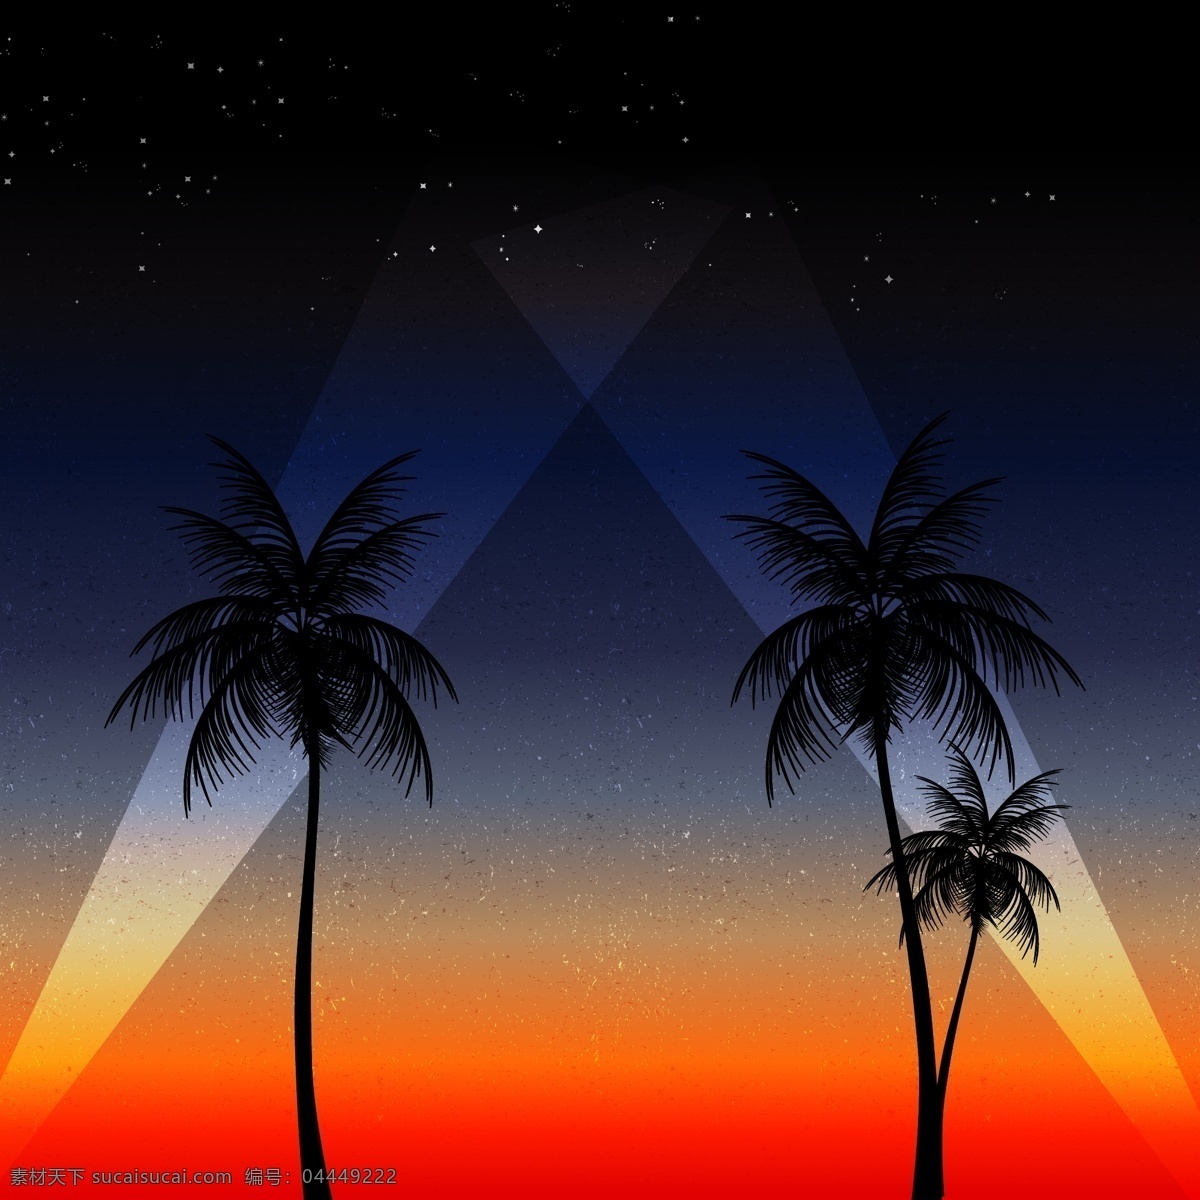 夏季 沙滩 派对 海报 高清 背景 星空 广告 模板 夜晚 椰子树 平面 矢量